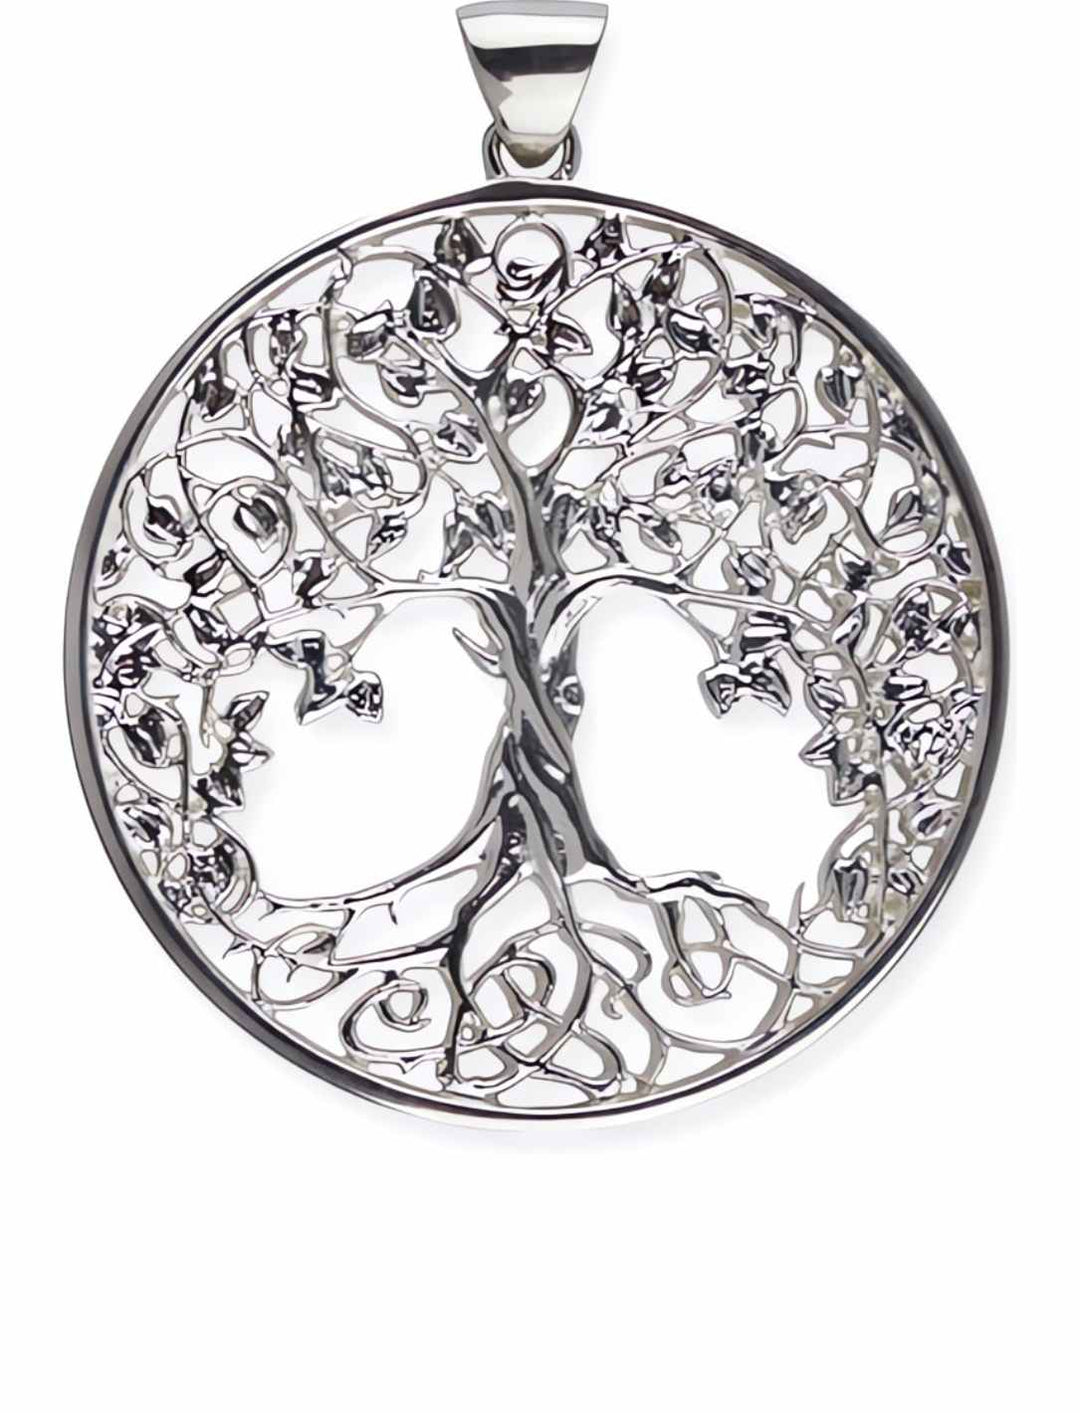 Rhodinierter 'Weltenbaum des Lebens' Anhänger aus 925er Sterling Silber auf weißem Hintergrund - erhältlich bei Runental.de